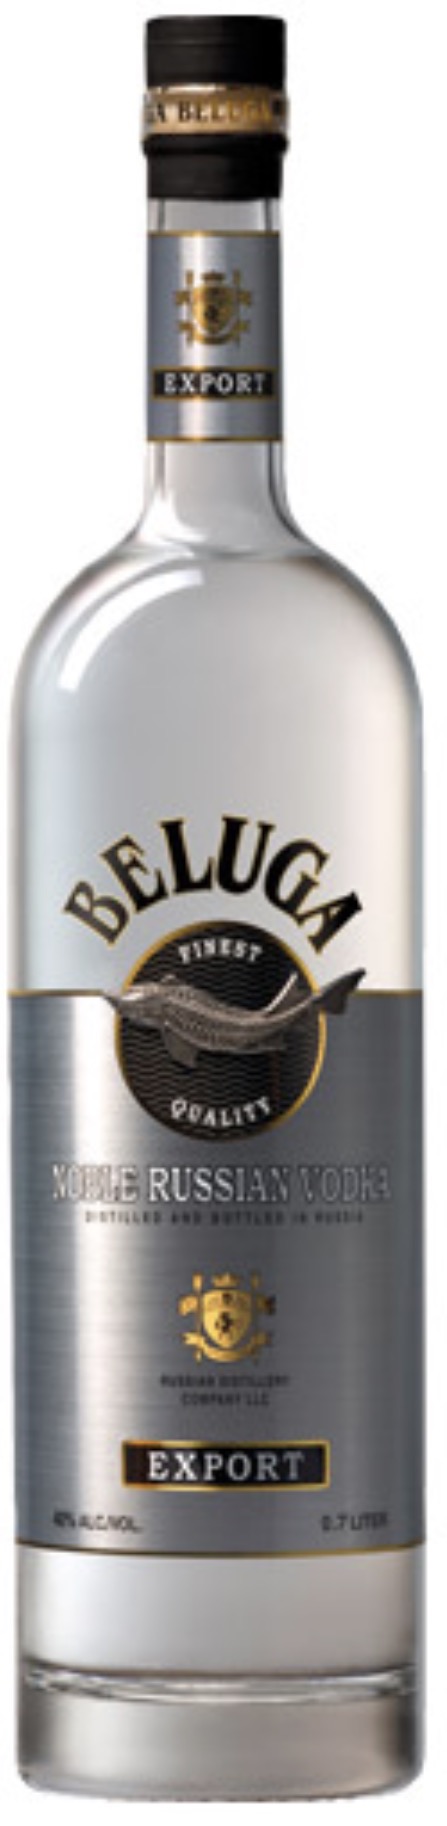 Beluga Noble Russian Vodka Export 40 % 0,7 l